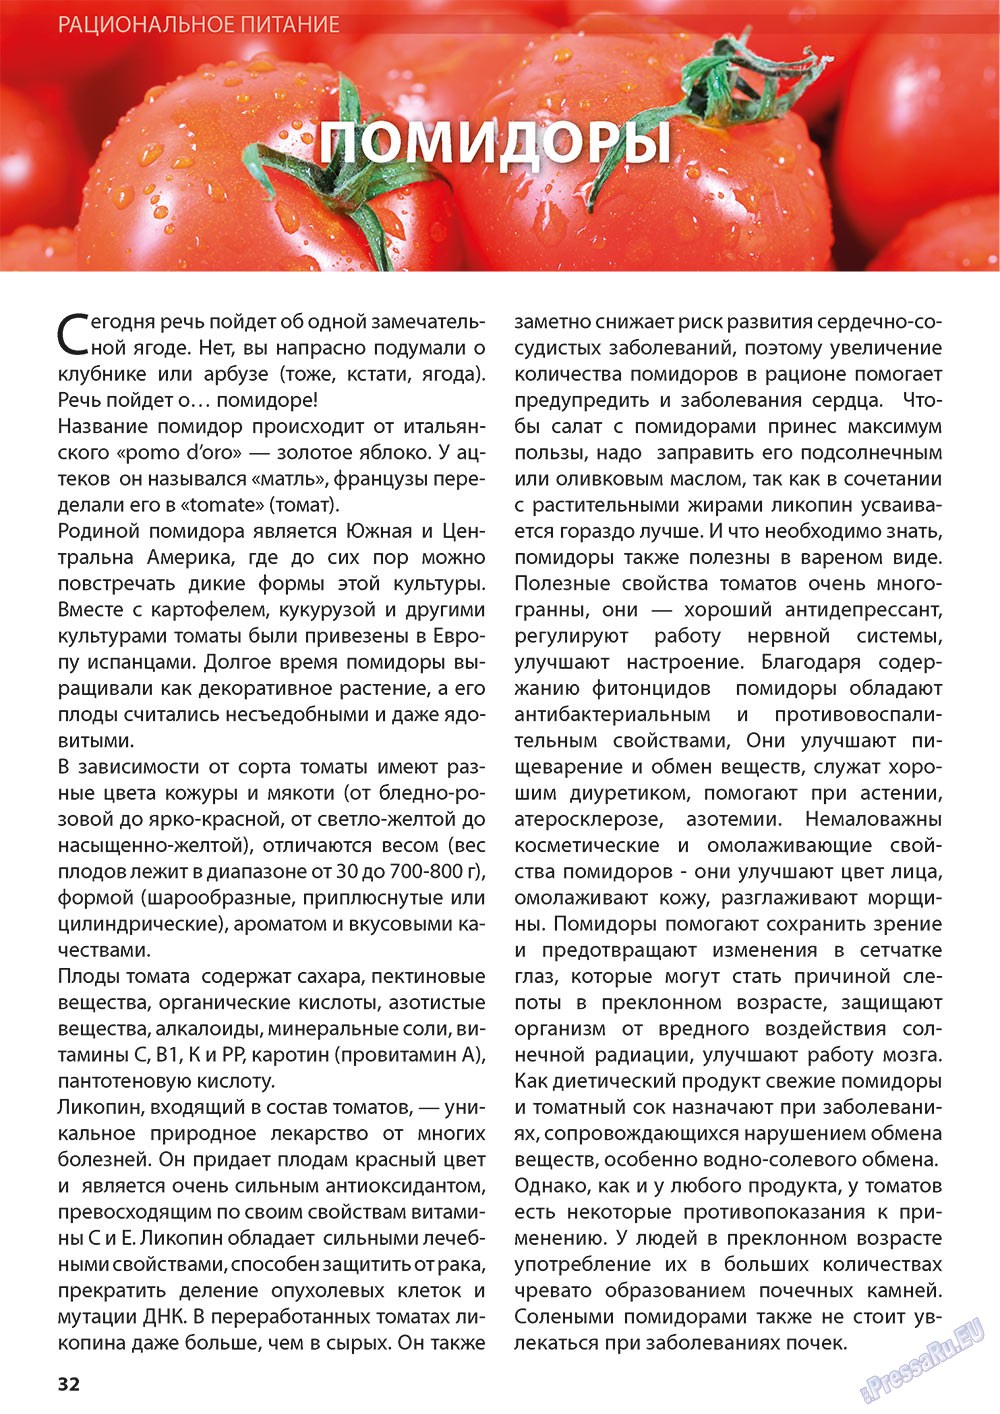 Можно ли помидор при грудном. Полезные свойства томатов. Питание томата. Что полезного в помидорах свежих. Можно ли есть помидоры.